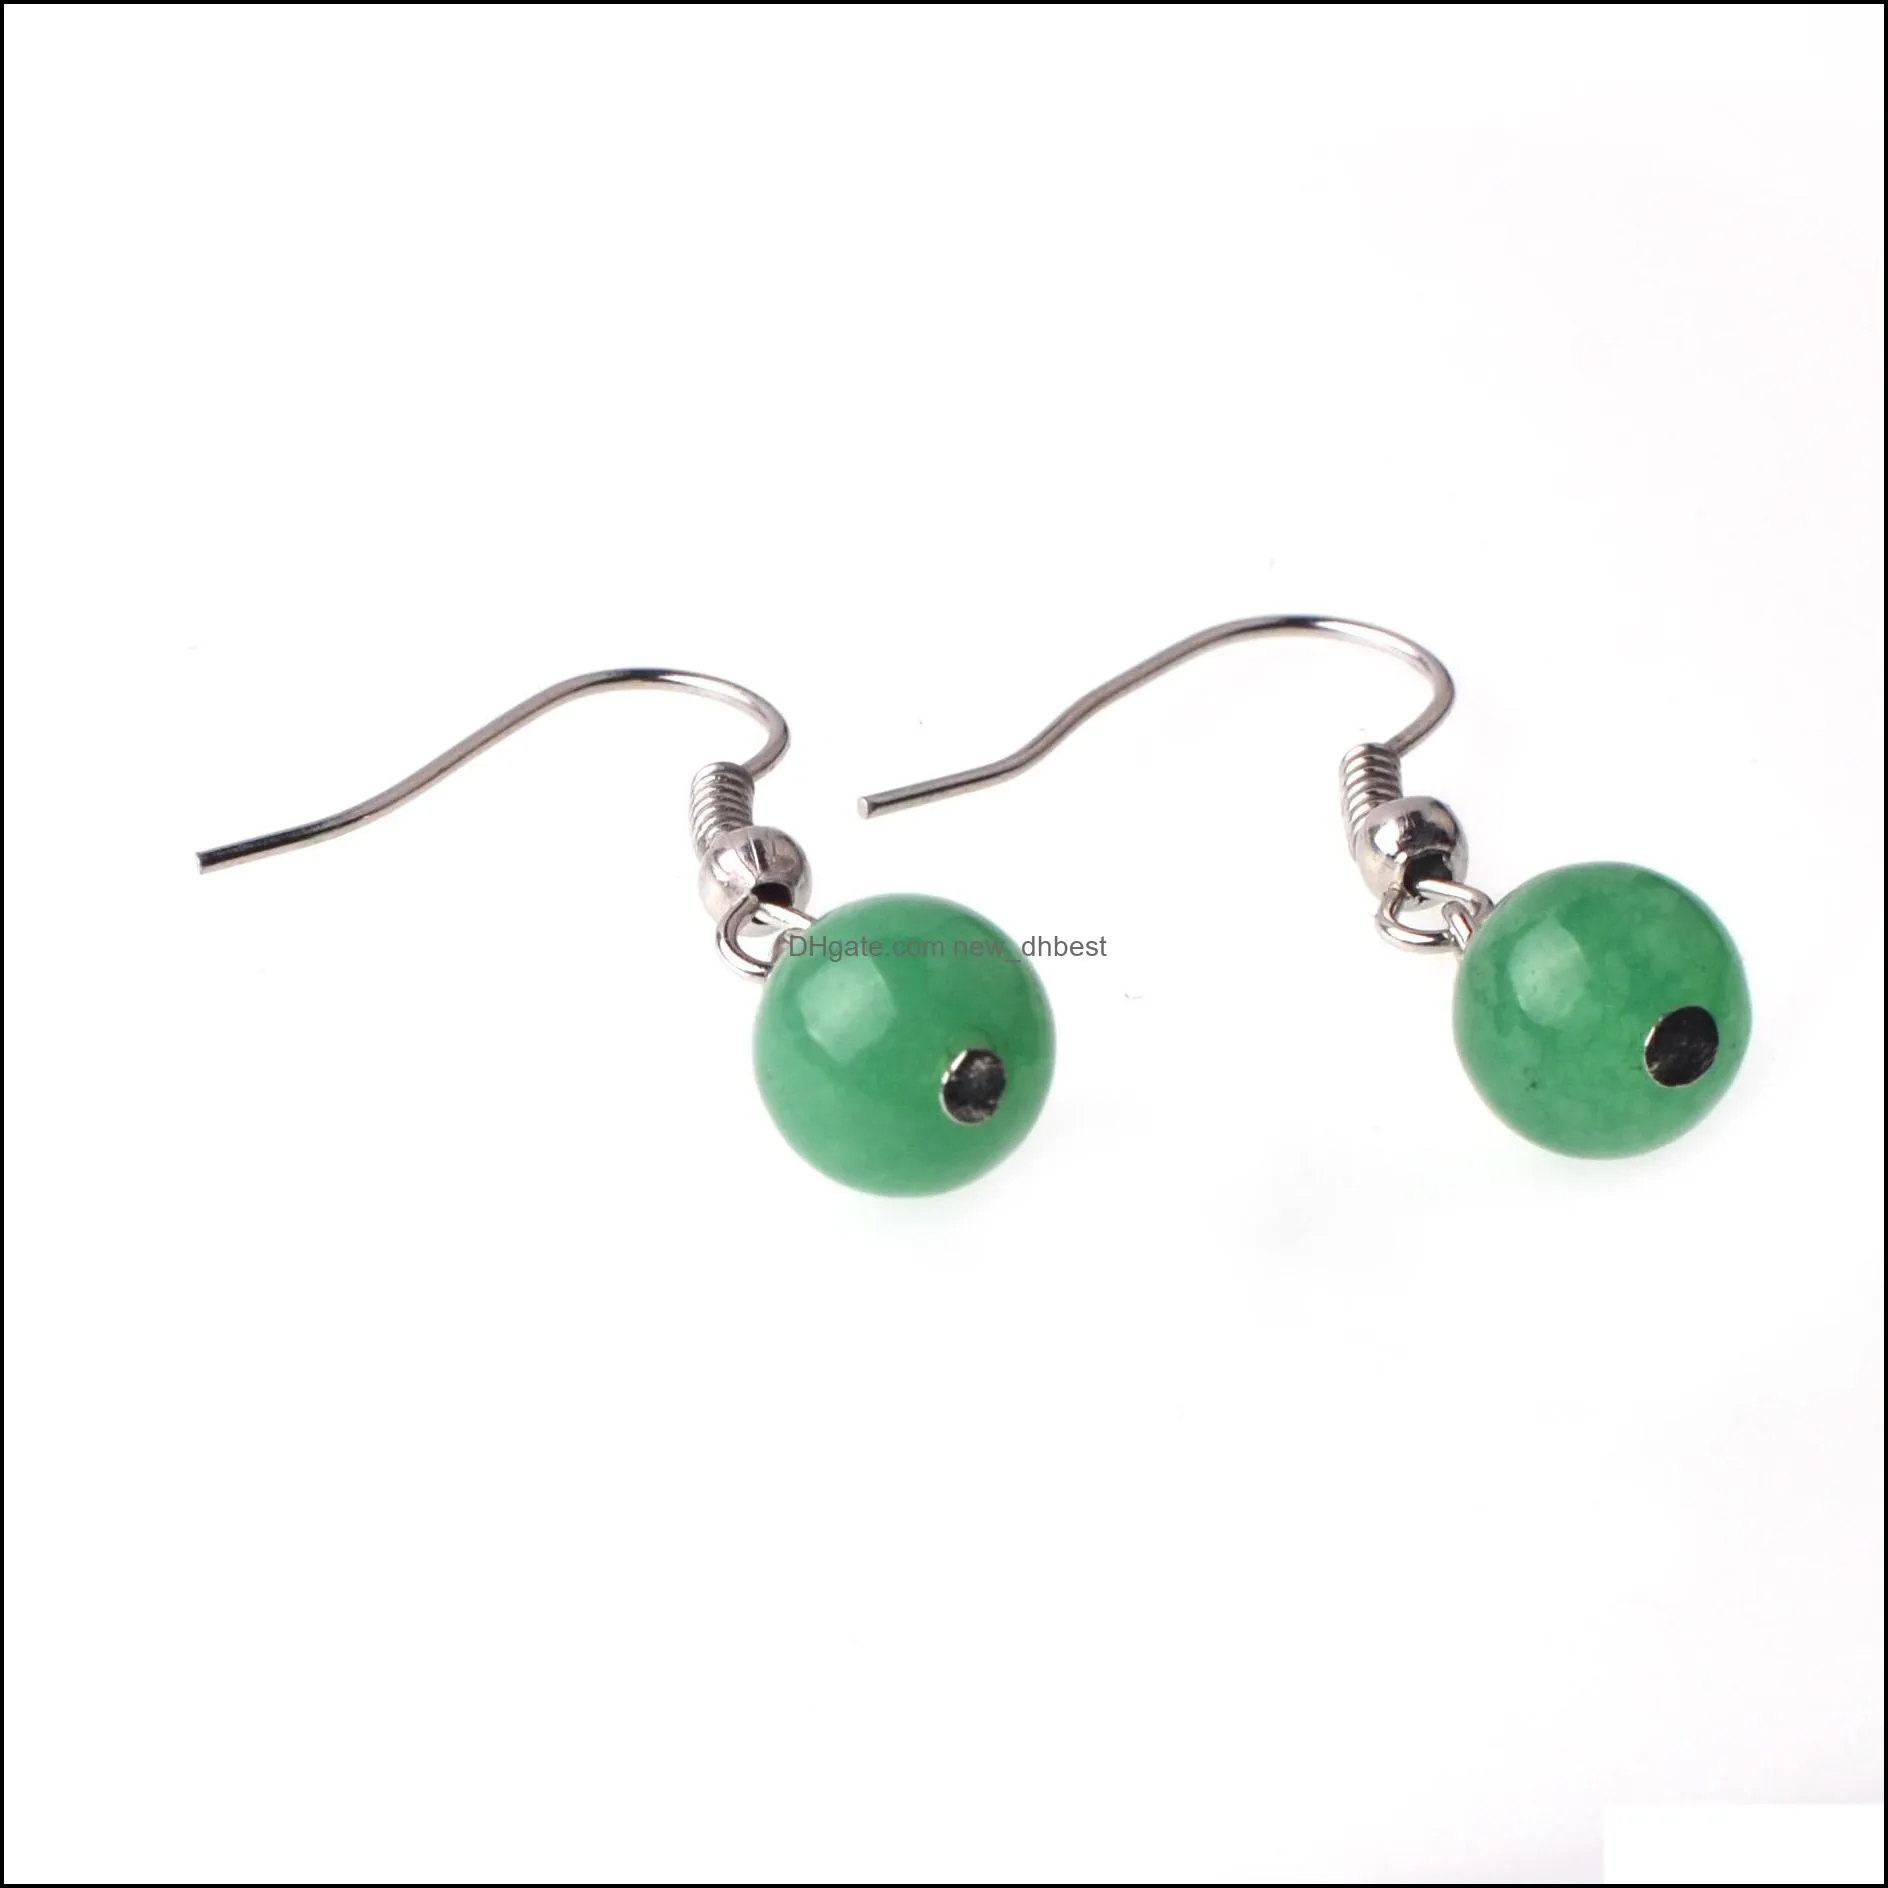 bead earrings stone pendant female fashion charm hook pierced ear drops accessories